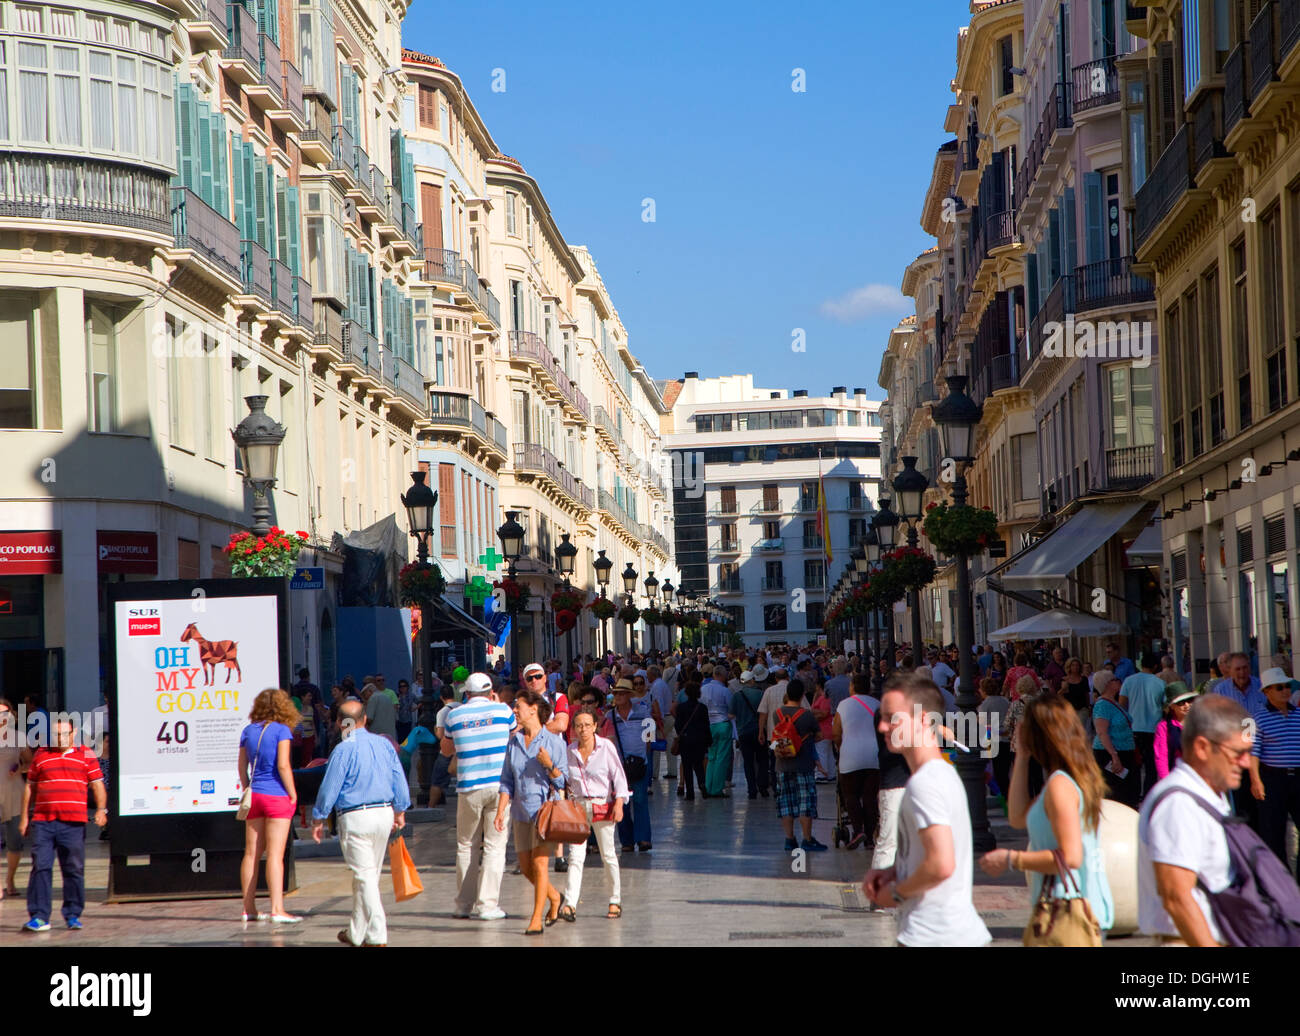 La gente en la calle comercial del centro de la ciudad de Málaga, España Foto de stock